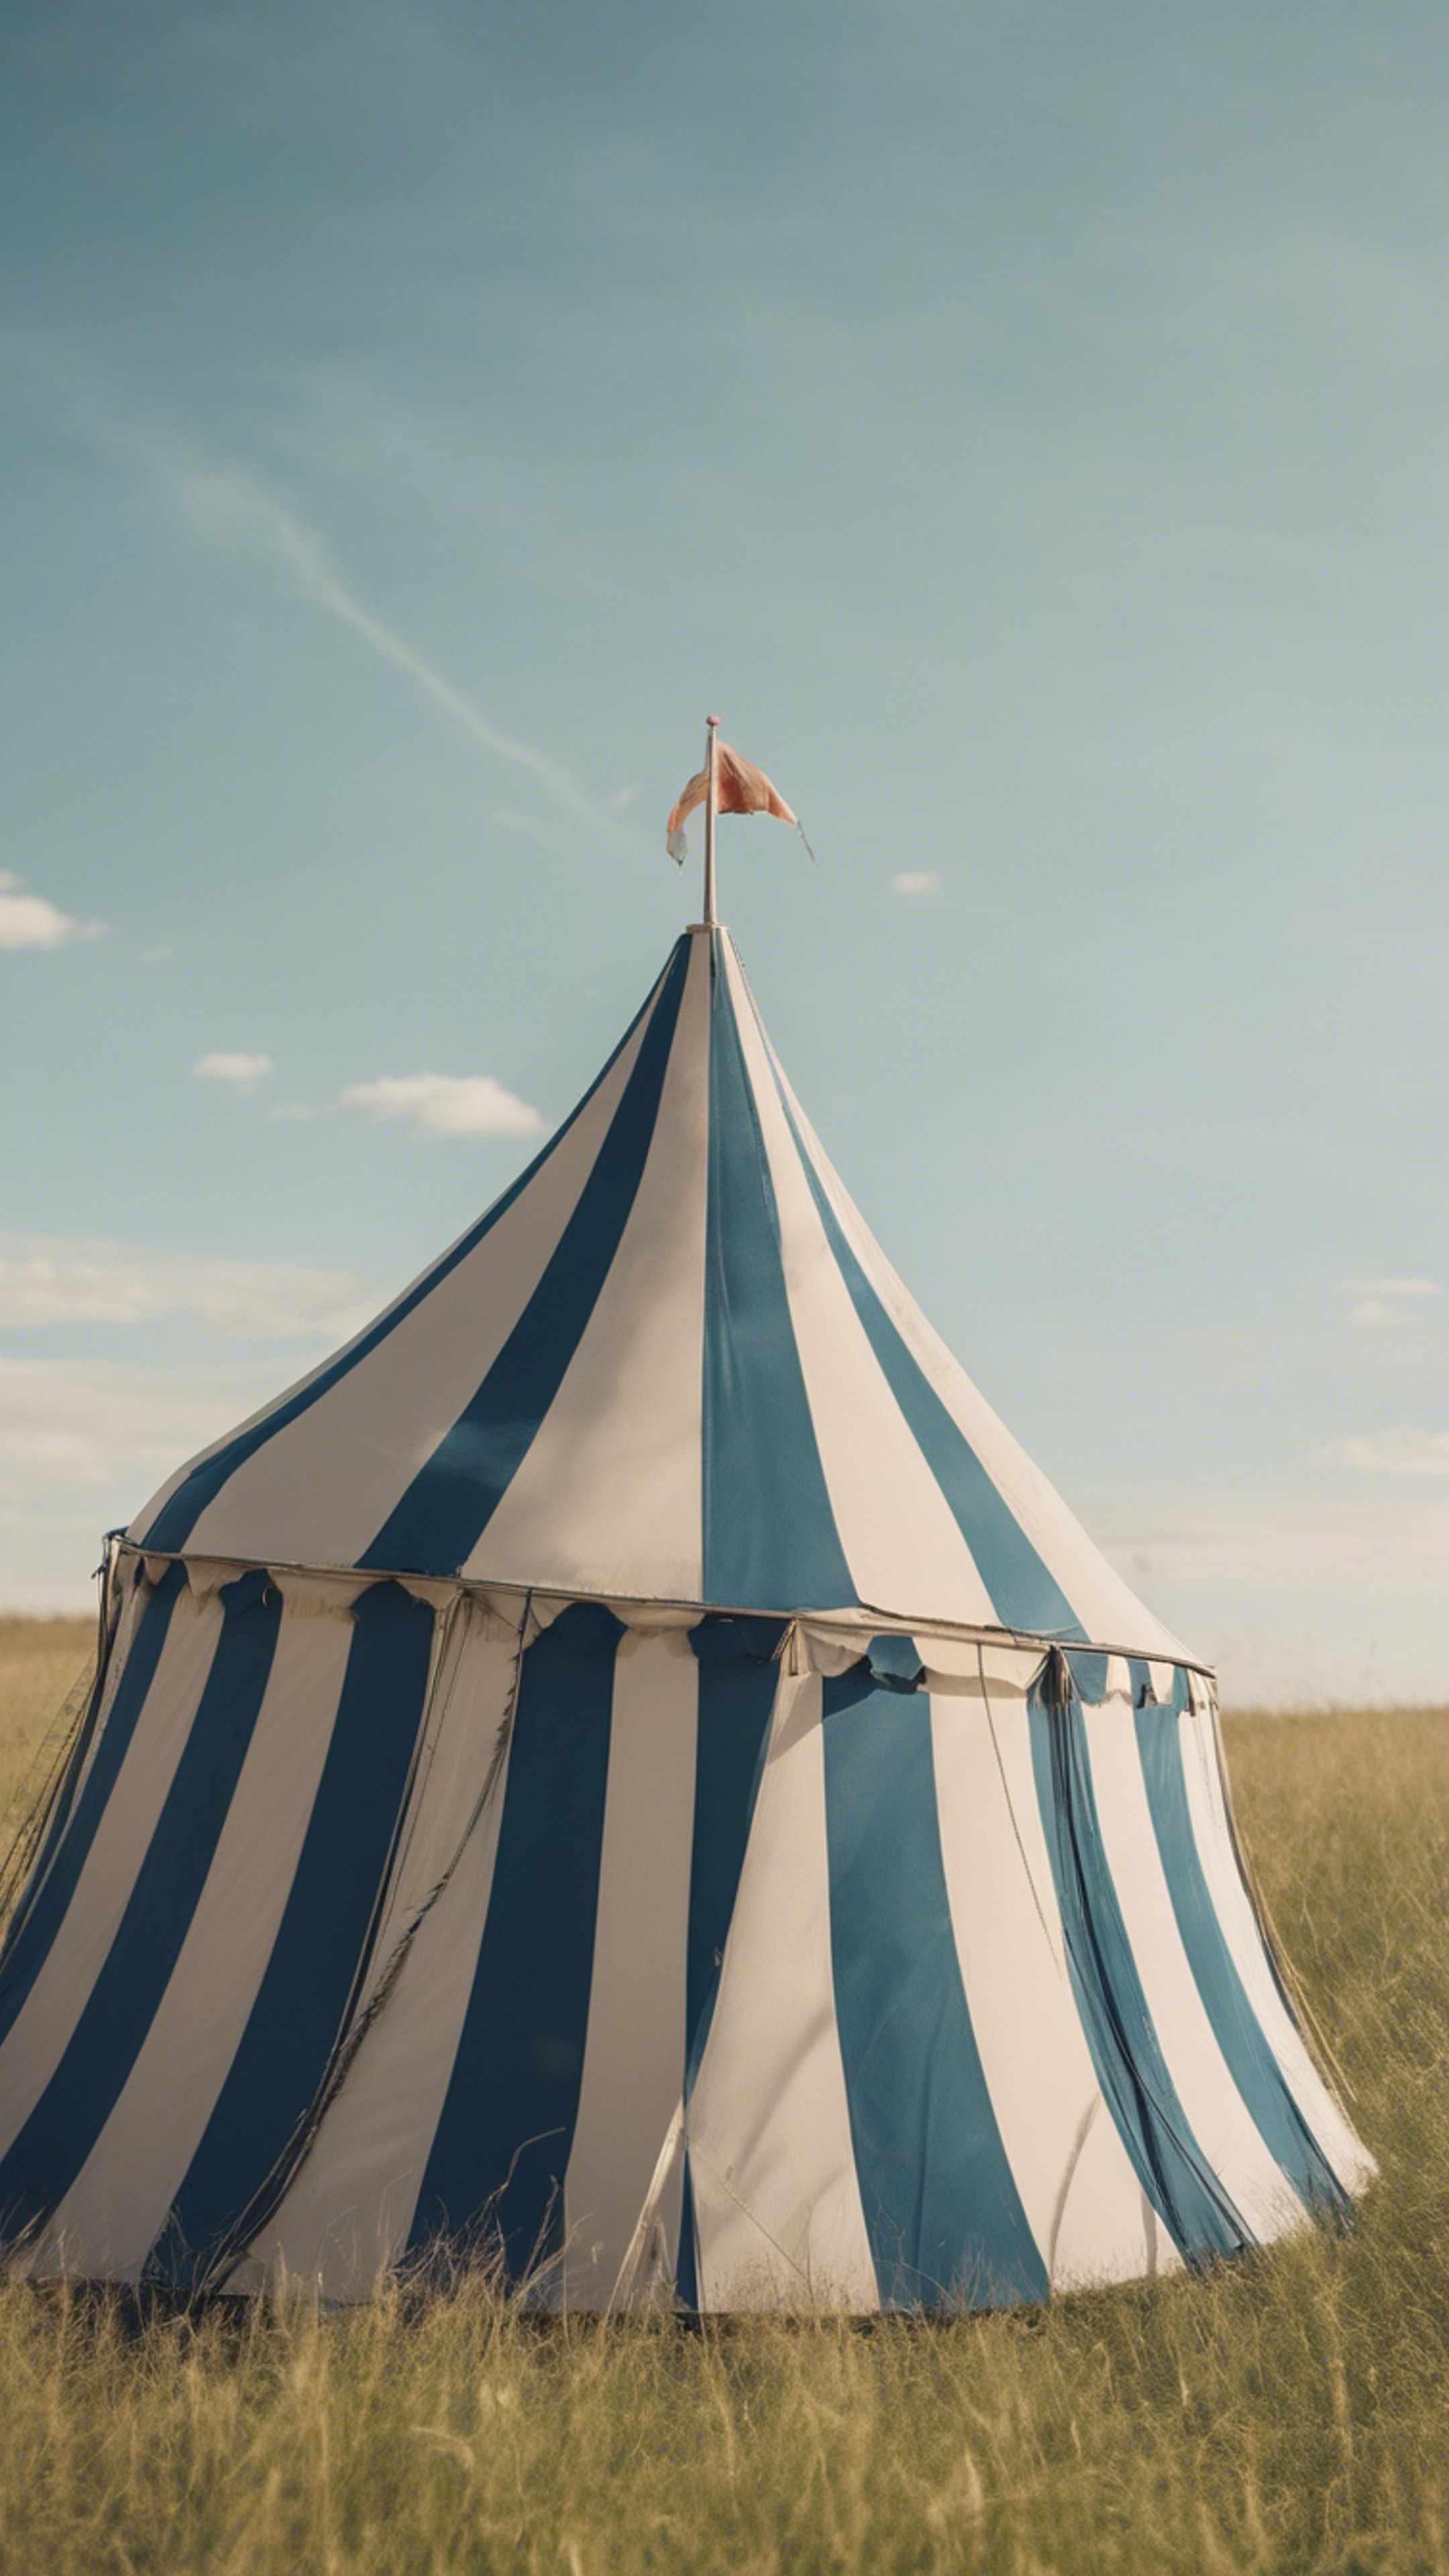 A vintage striped circus tent in a grassy field with a blue sky overhead. duvar kağıdı[07d58b74cbfe41aa8350]